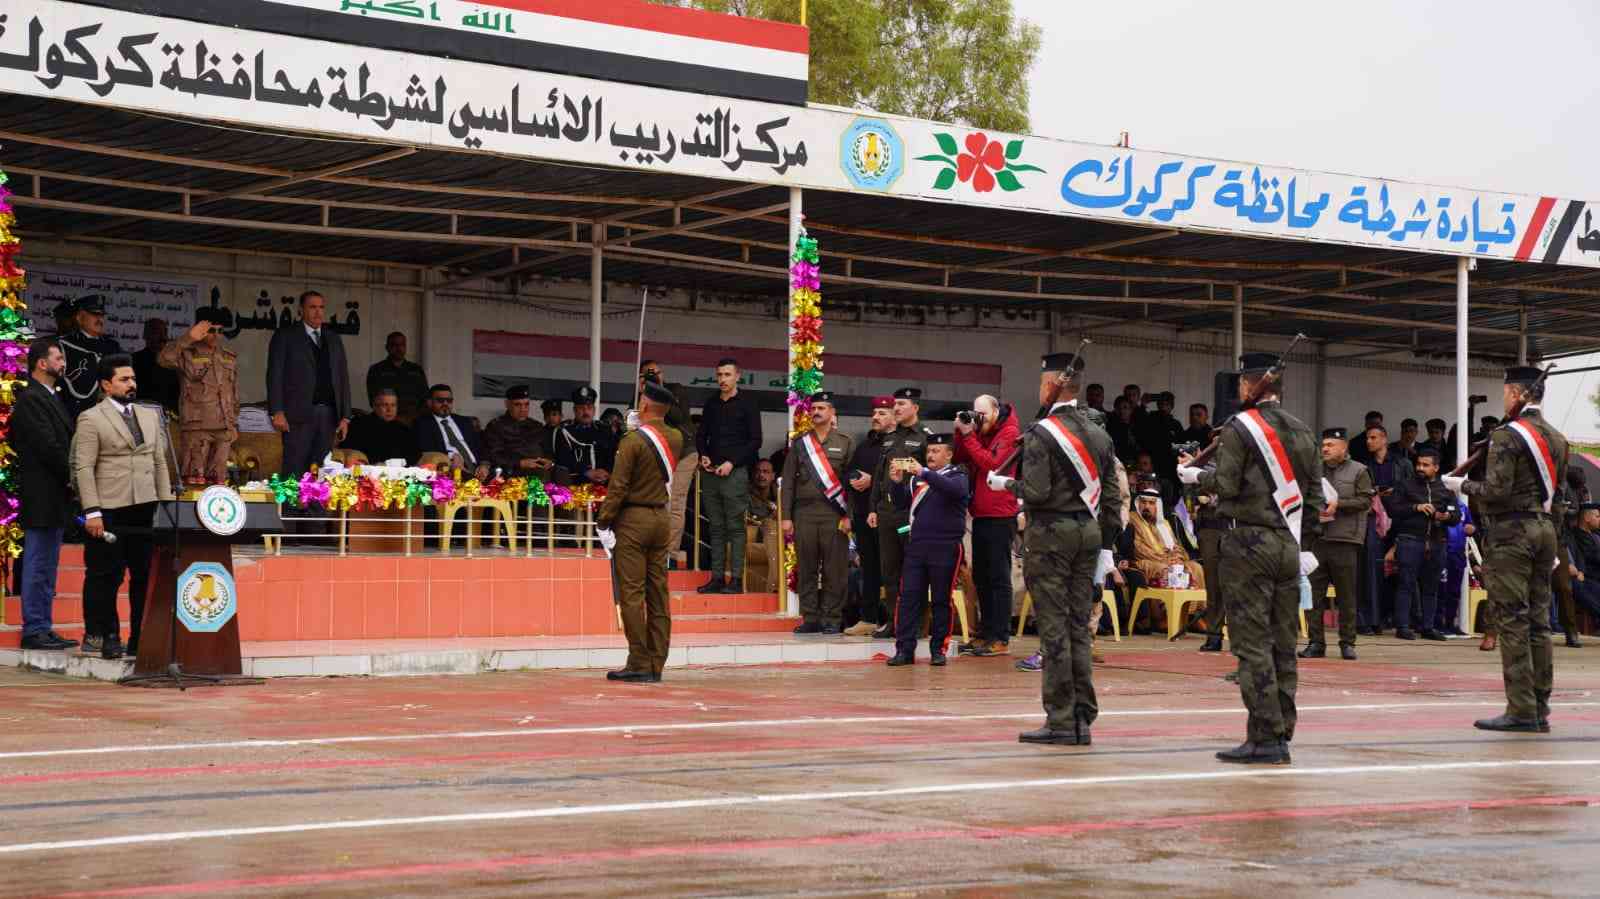 السيد محافظ كركوك رئيس اللجنة الامنية العليا  يهنىء الشرطة العراقية بعيدها السنوي 101،ويشارك احتفاليتهم الوطنية في كركوك .